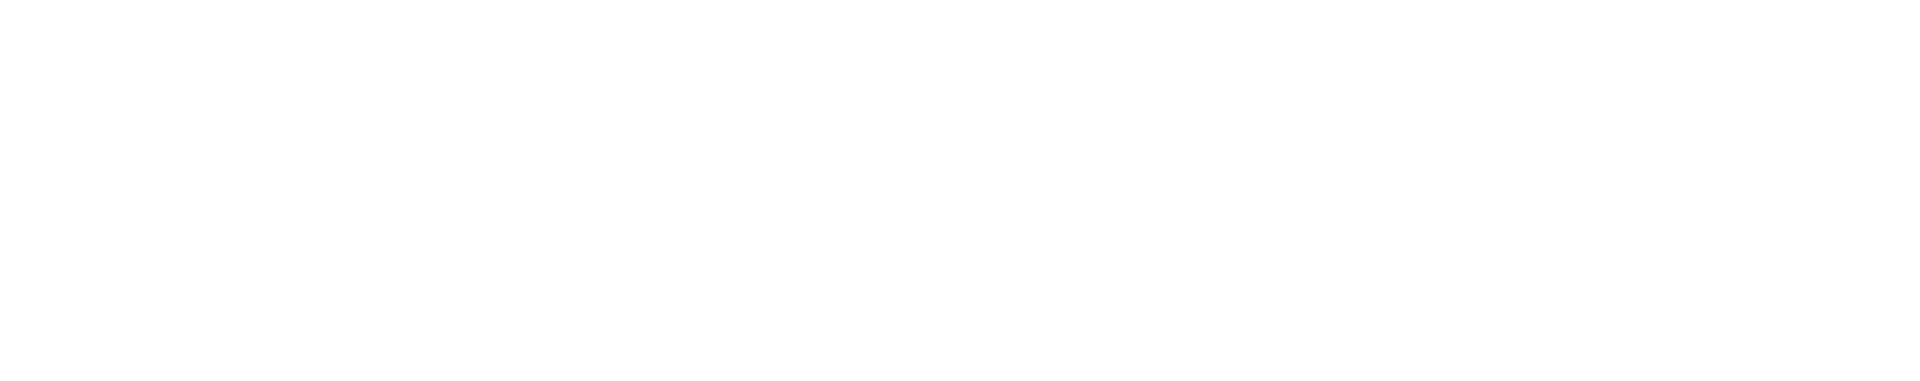 Producto de aldea - Plan de recuperación trasformación y resiliencia